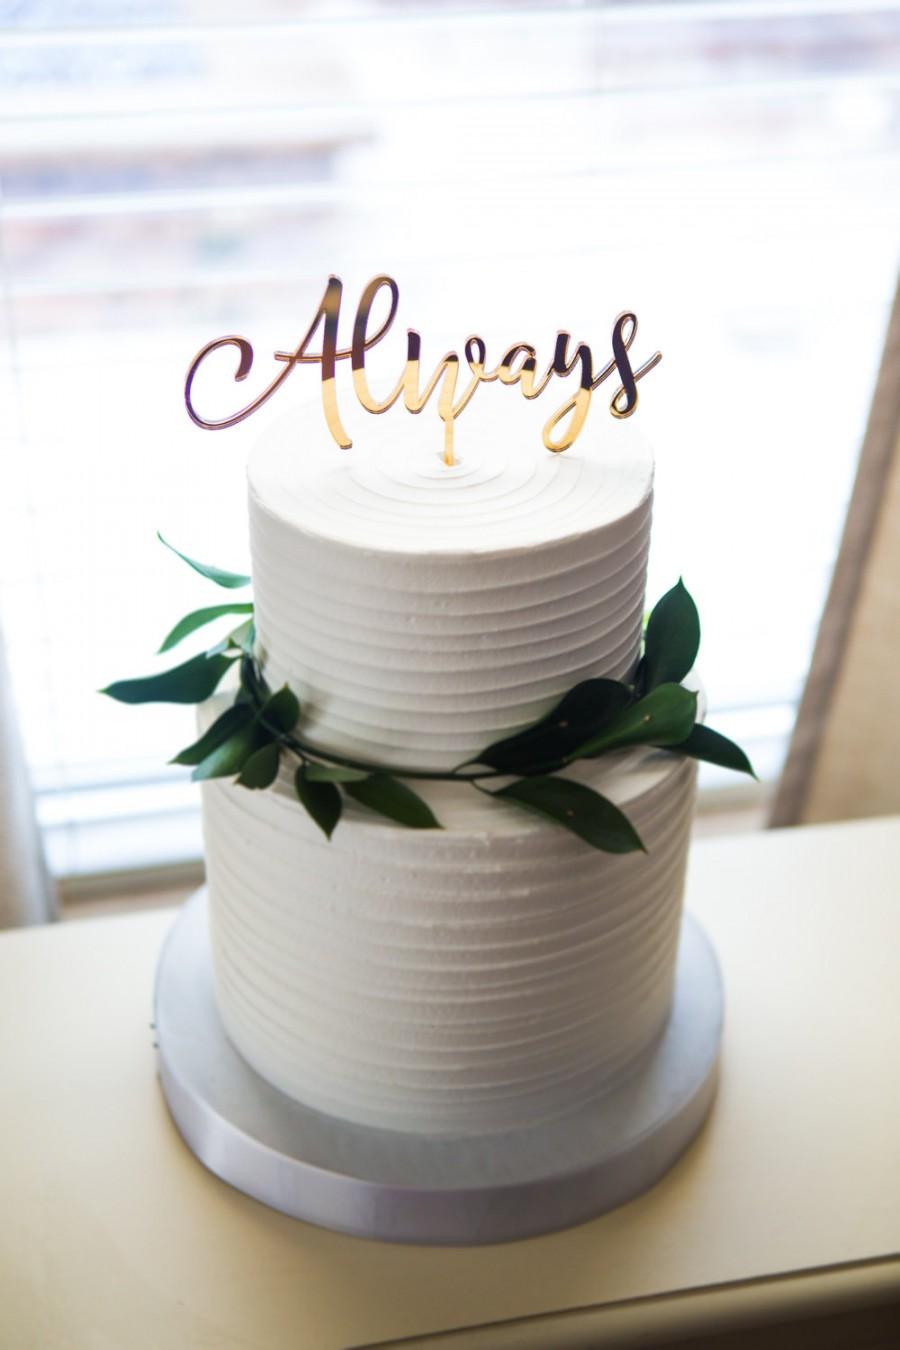 زفاف - Wedding Cake Topper Always Gold Calligraphy Script Cake Decor in Custom Colors or Gold, Theme Wedding Reception Dessert (Item - ALW900)